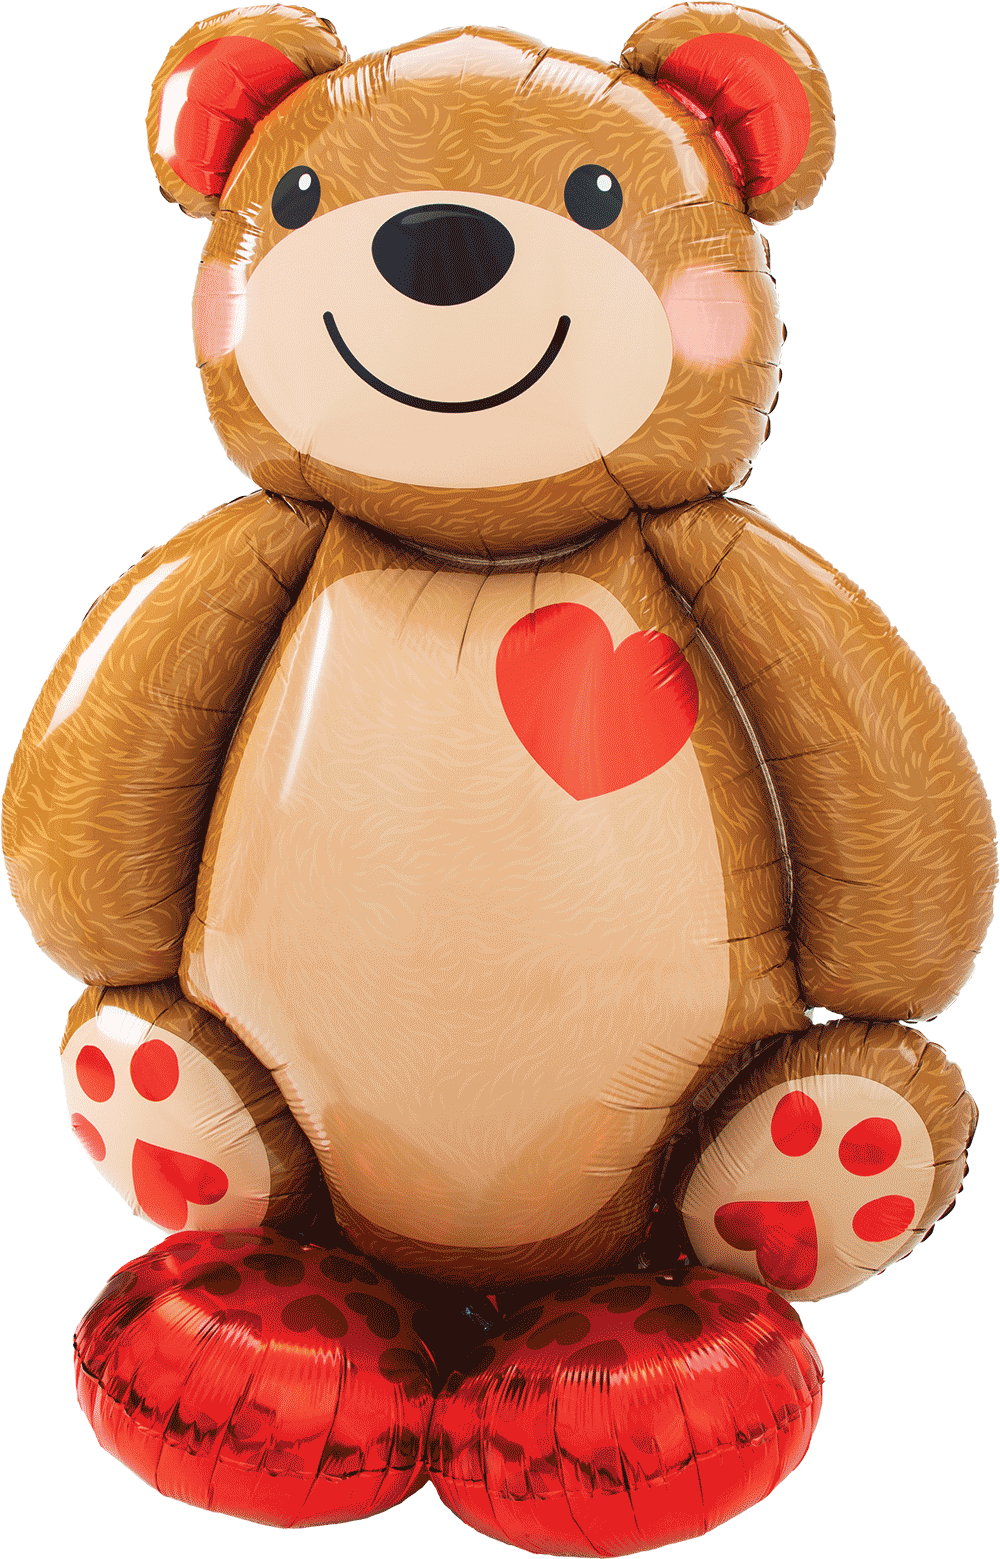 Big Cuddly Teddy